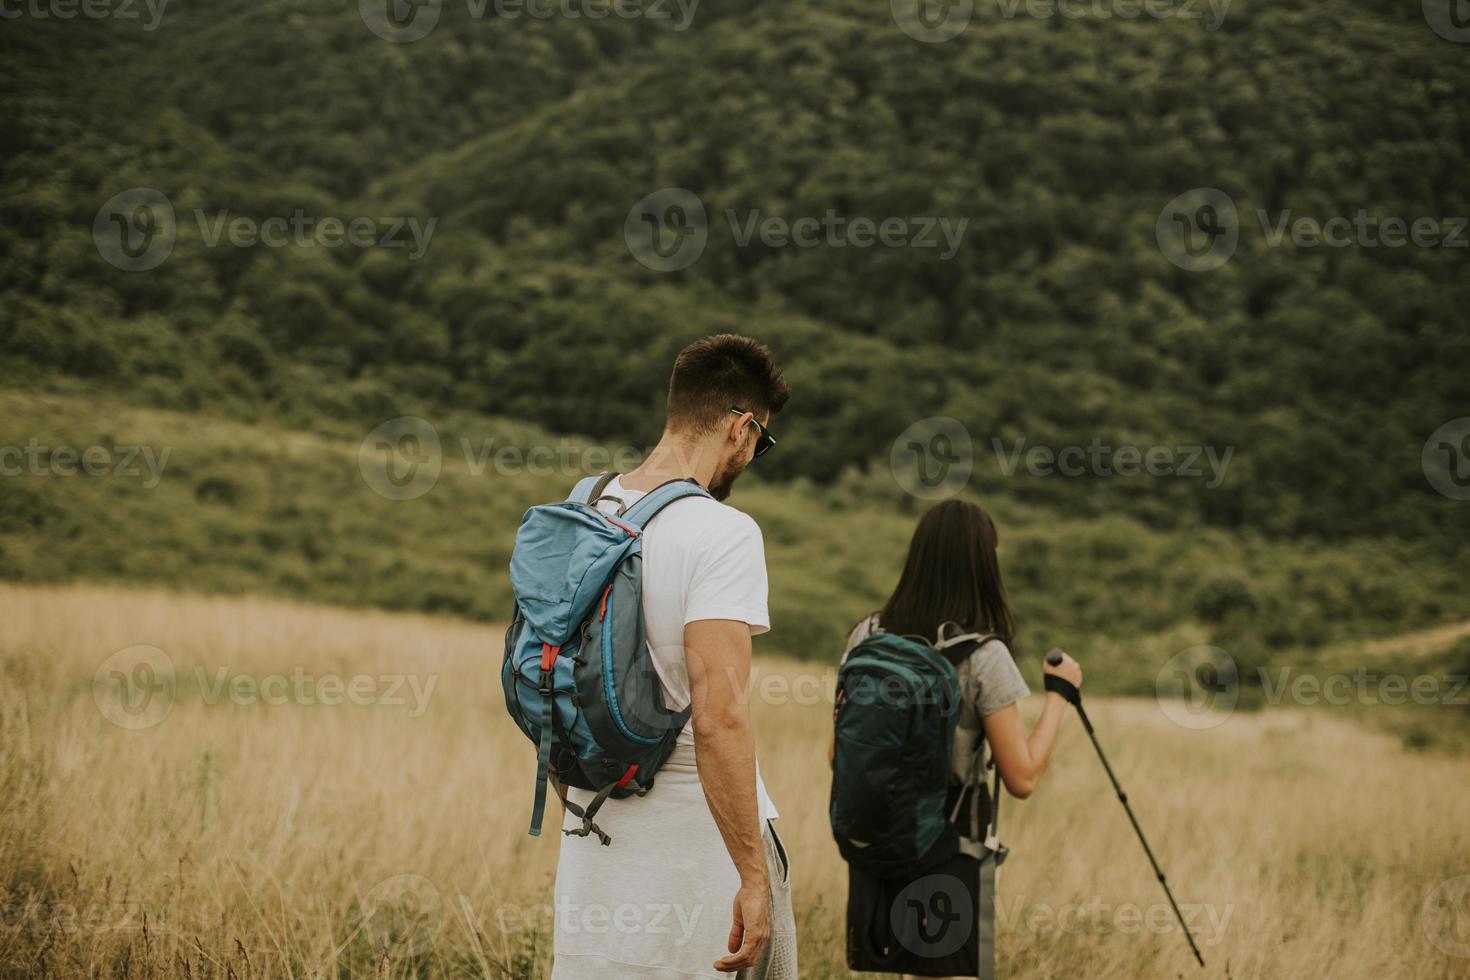 le par som går med ryggsäckar över gröna kullar foto